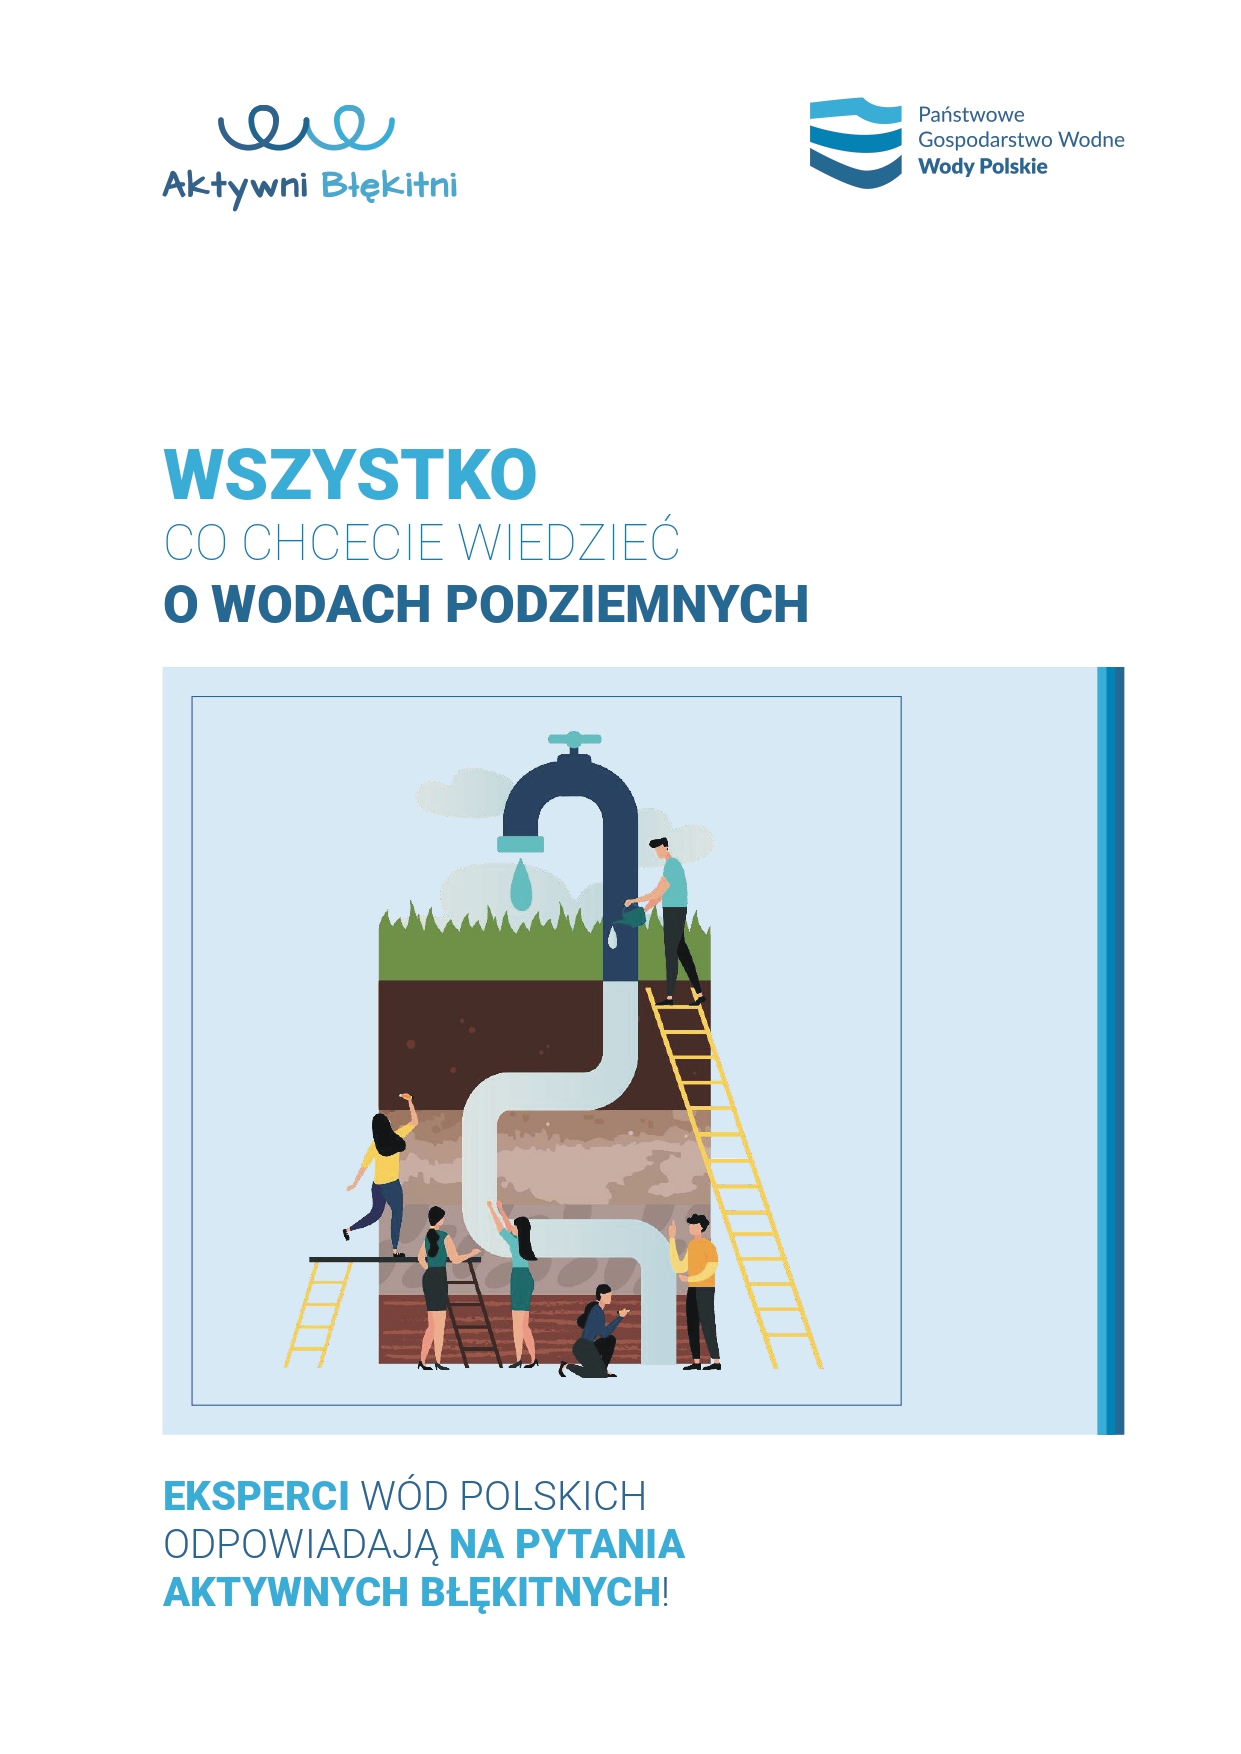 Wszystko co chcecie wiedzieć o wodach podziemnych baza wiedzy Wód Polskich 1 1 page 0001